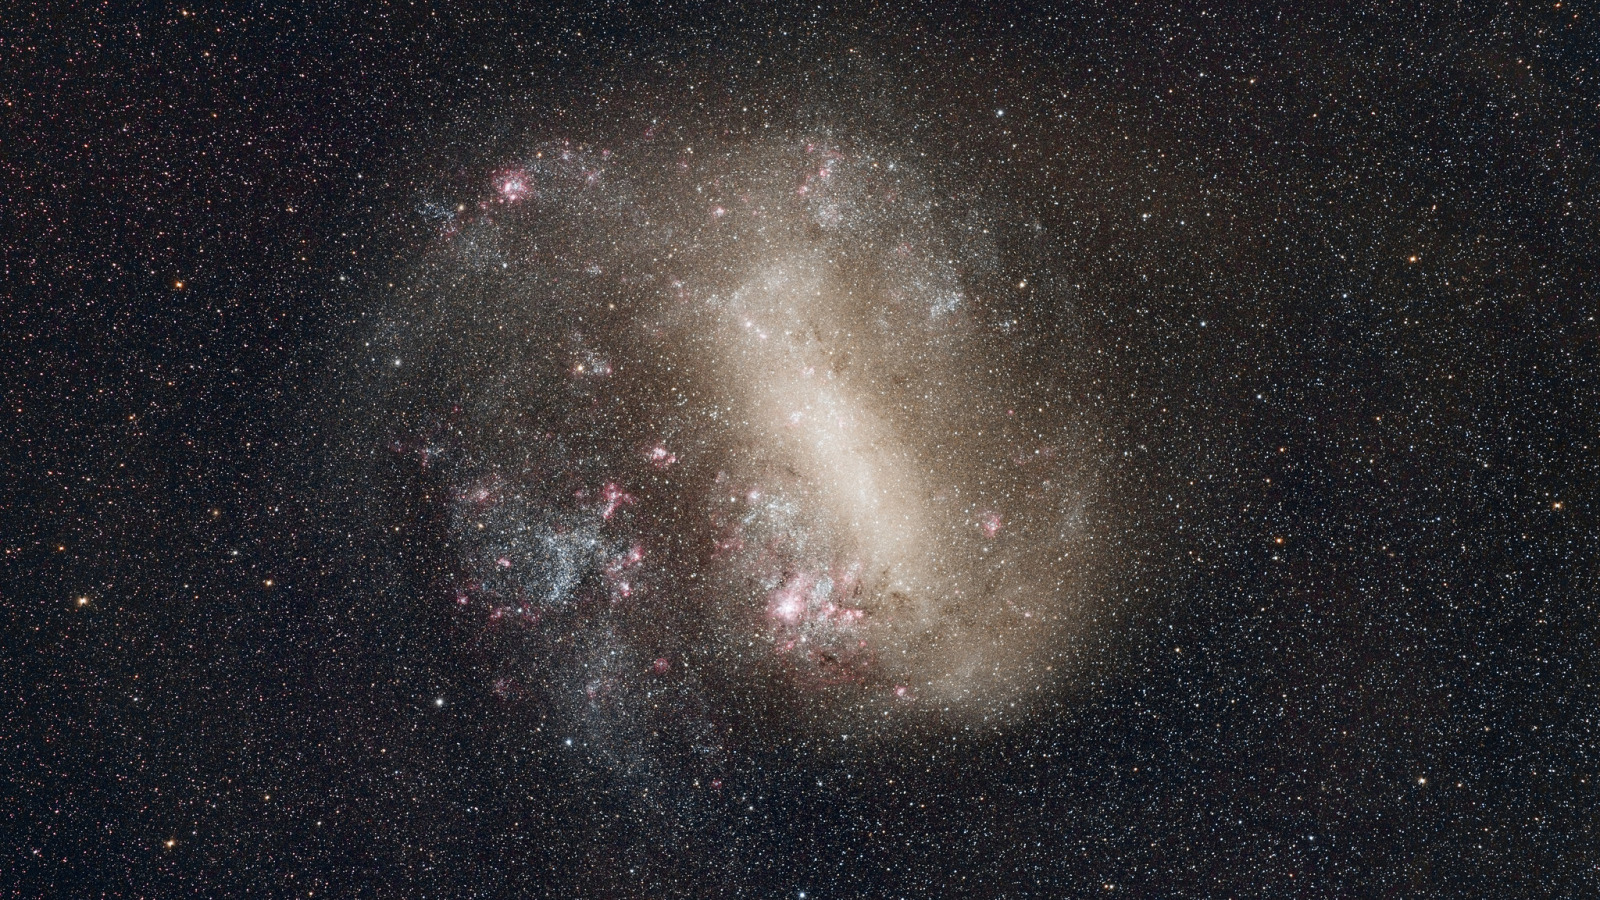 Магеллановы облака песни. Малое Магелланово облако Галактика Млечный путь. Карликовая BCG-Галактика. Большое Магеллановое облако. Космос мало звезд.